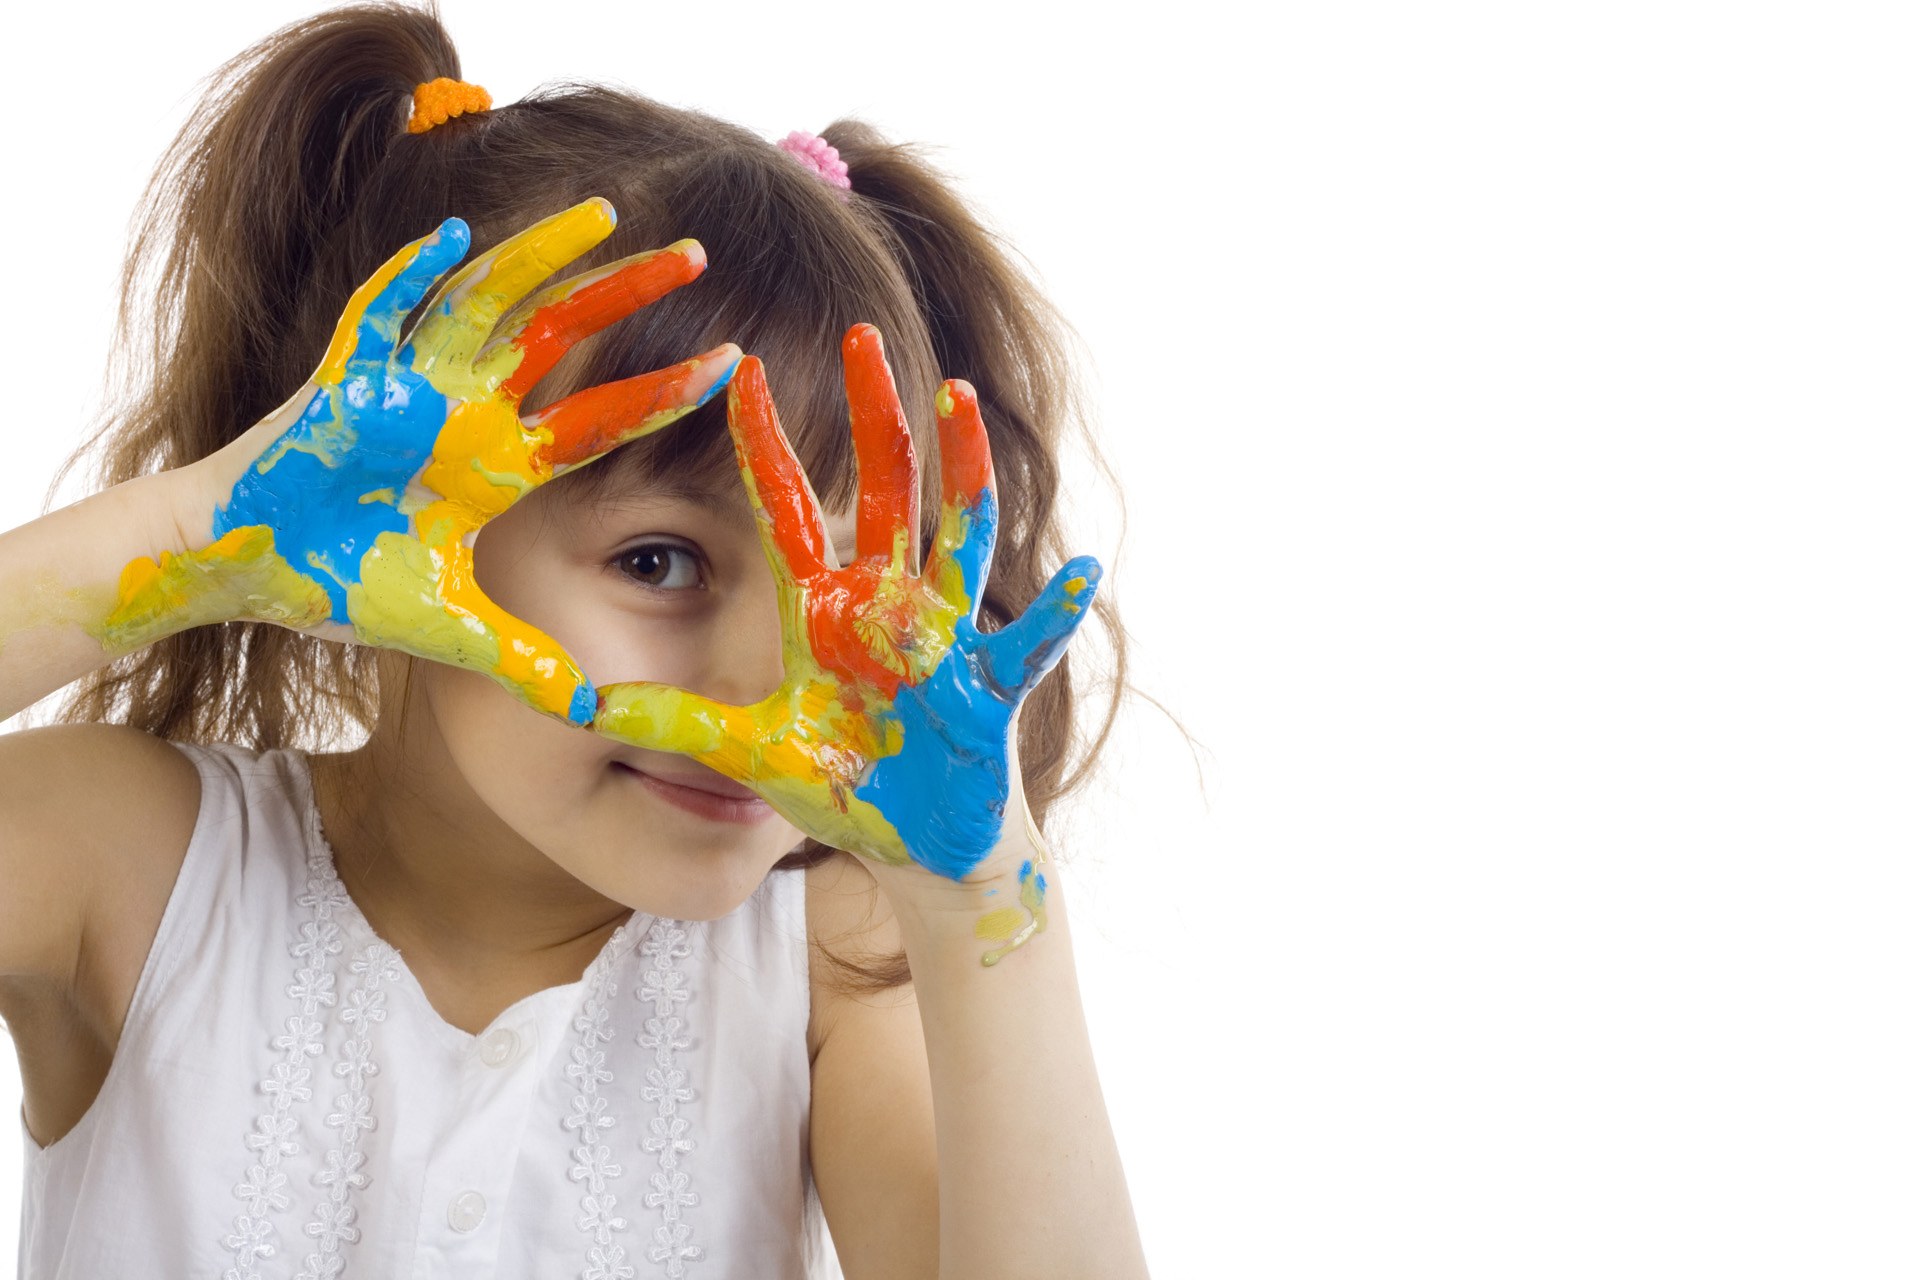 Mùi sơn có thể ảnh hưởng đến hệ thần kinh và não bộ của trẻ nhỏ